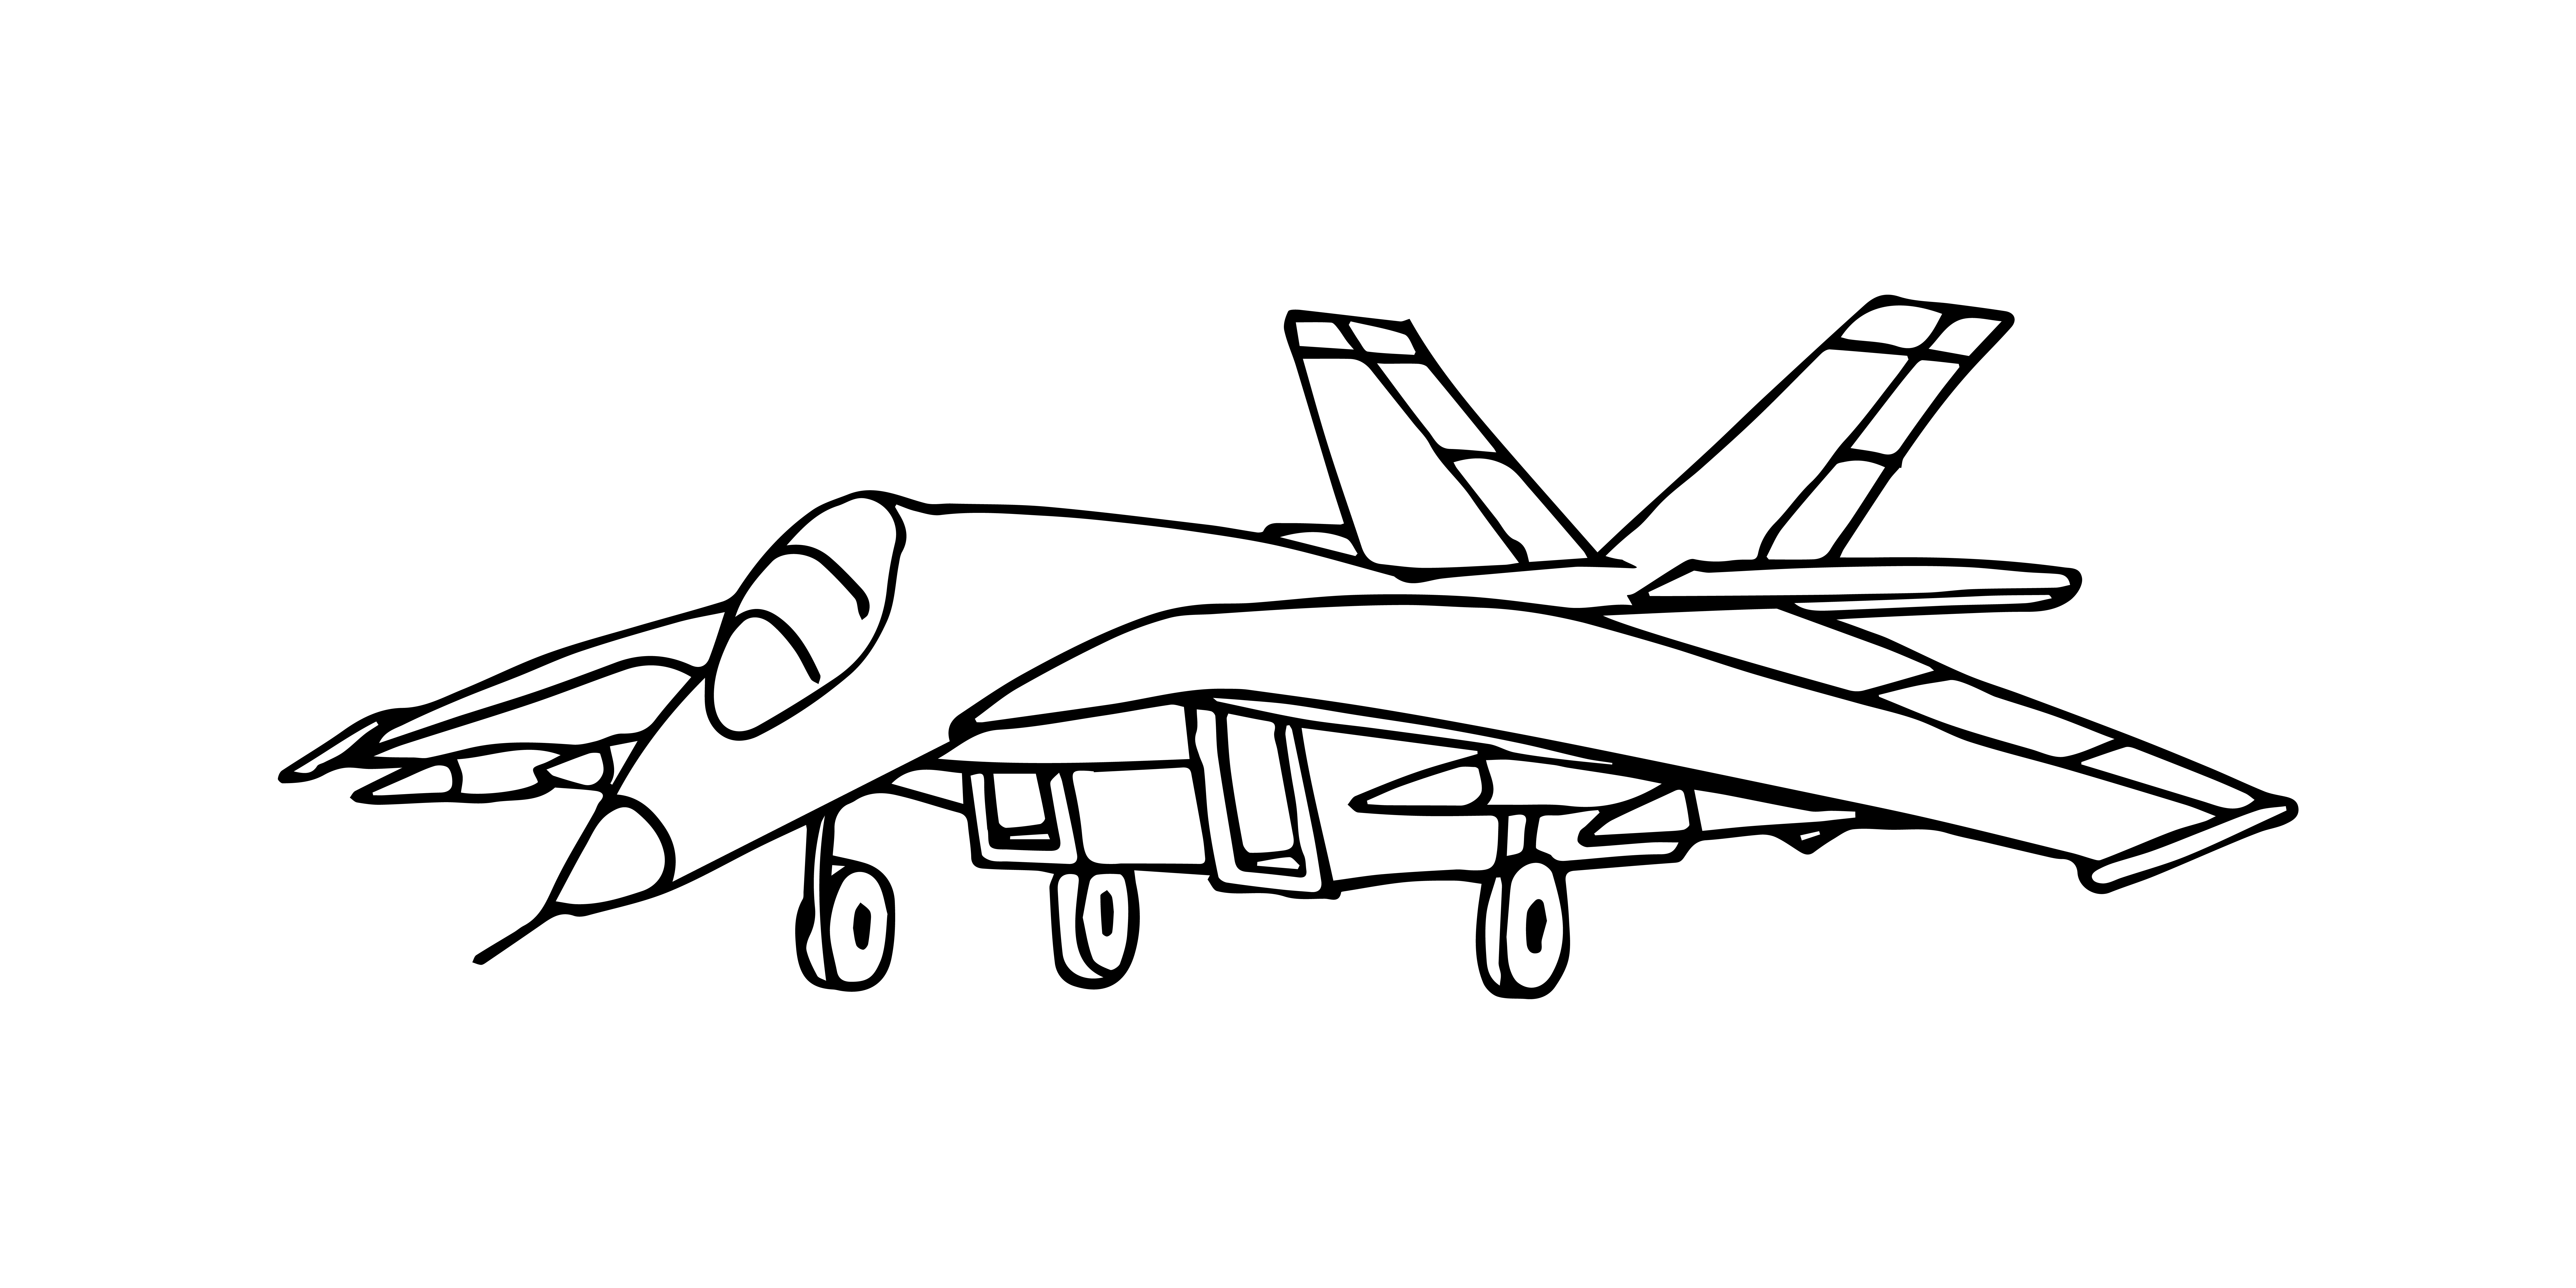 Раскраска истребитель «Летающий боец» формата А4 в высоком качестве